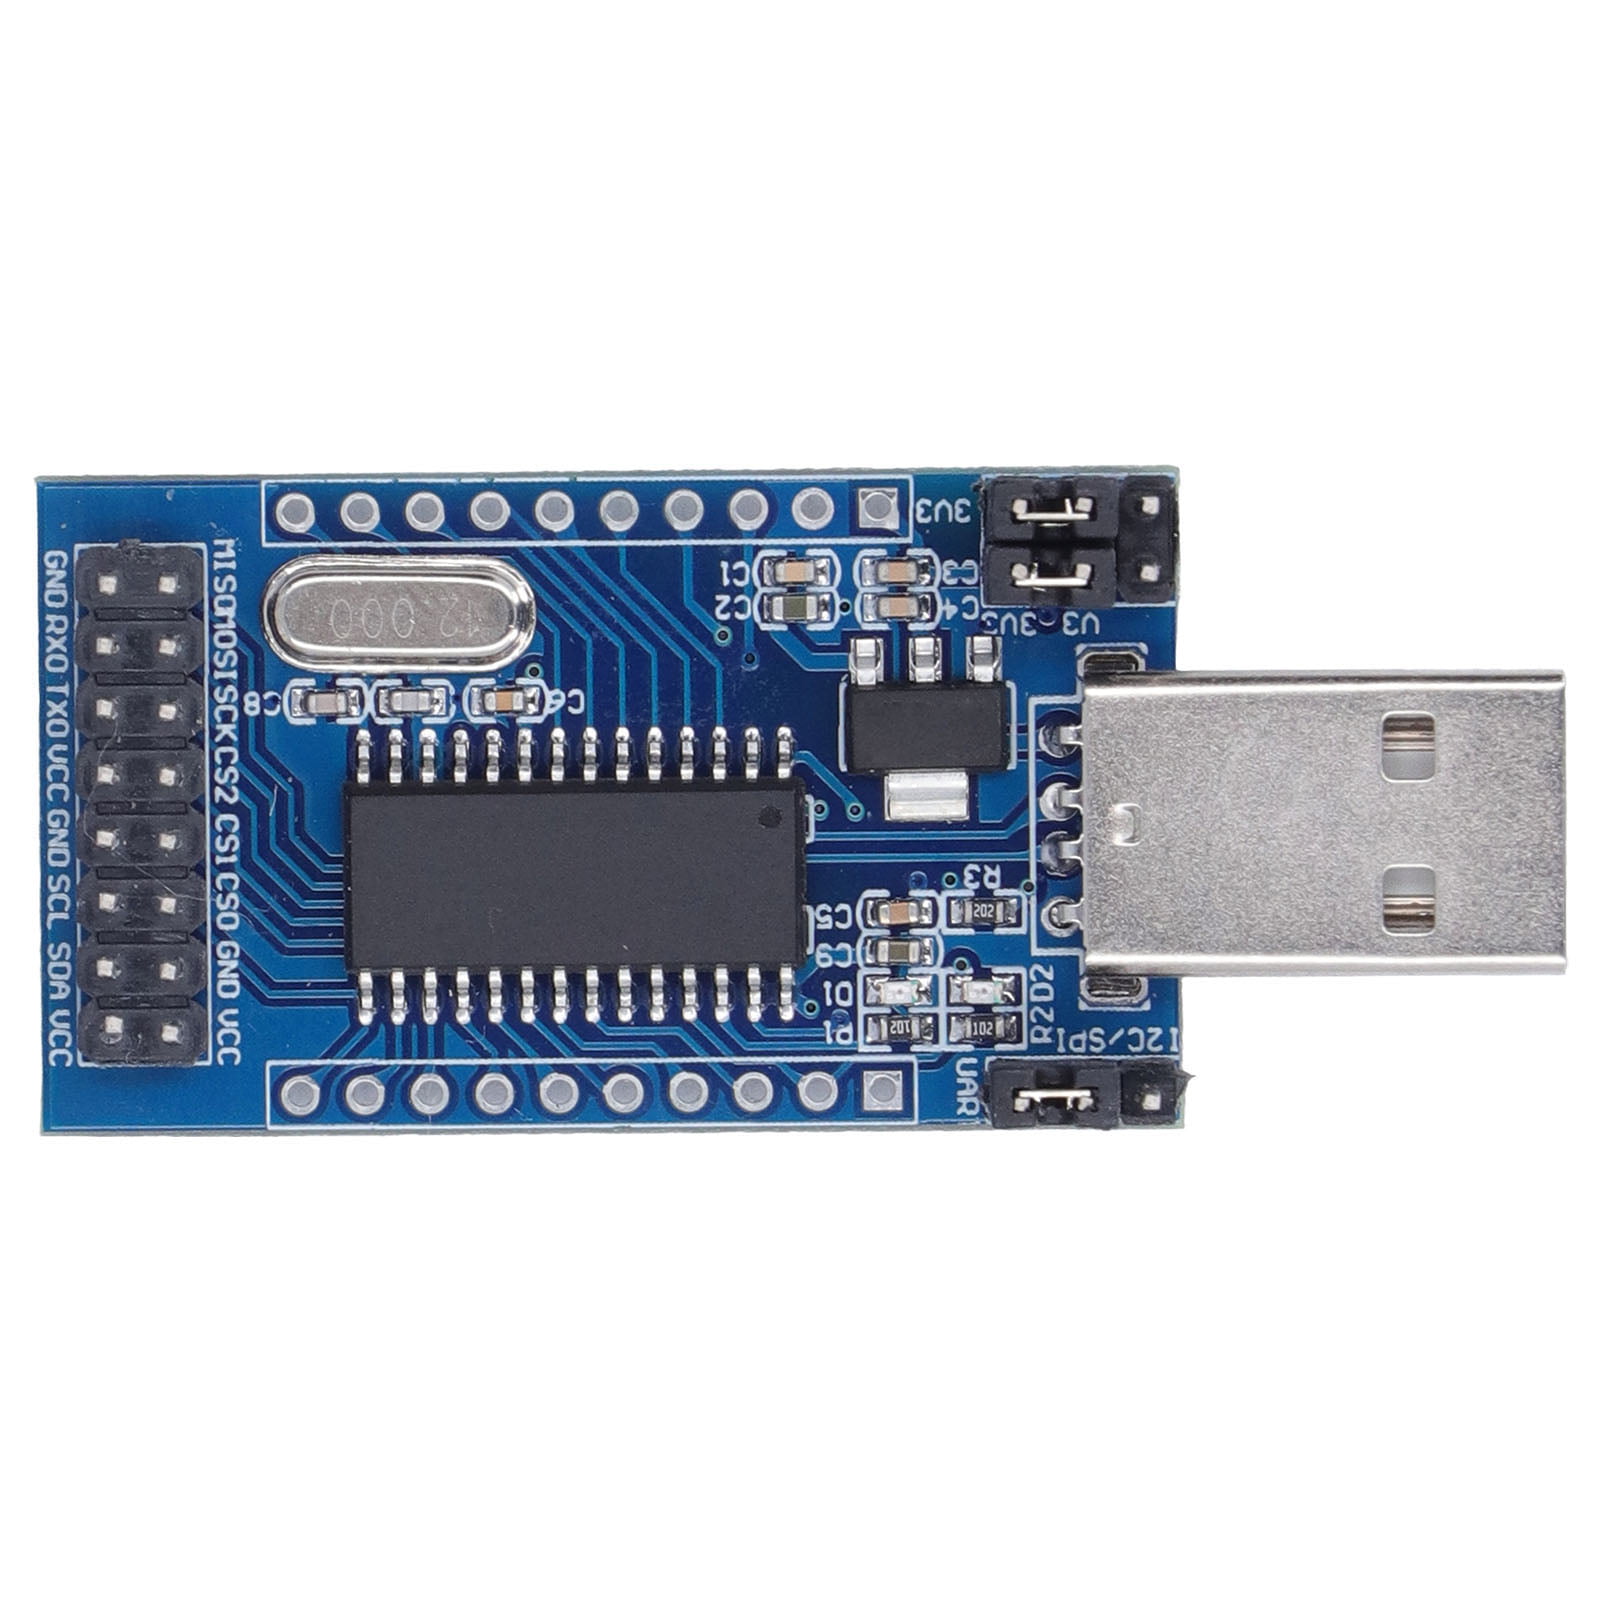 bar fremstille synd USB Port Converter Module, USB To UART IIC SPI TTL ISP EPP MEM CH341A Chip USB  Serial Port Adapter With Working Status Indicator For Program Debugging -  Walmart.com